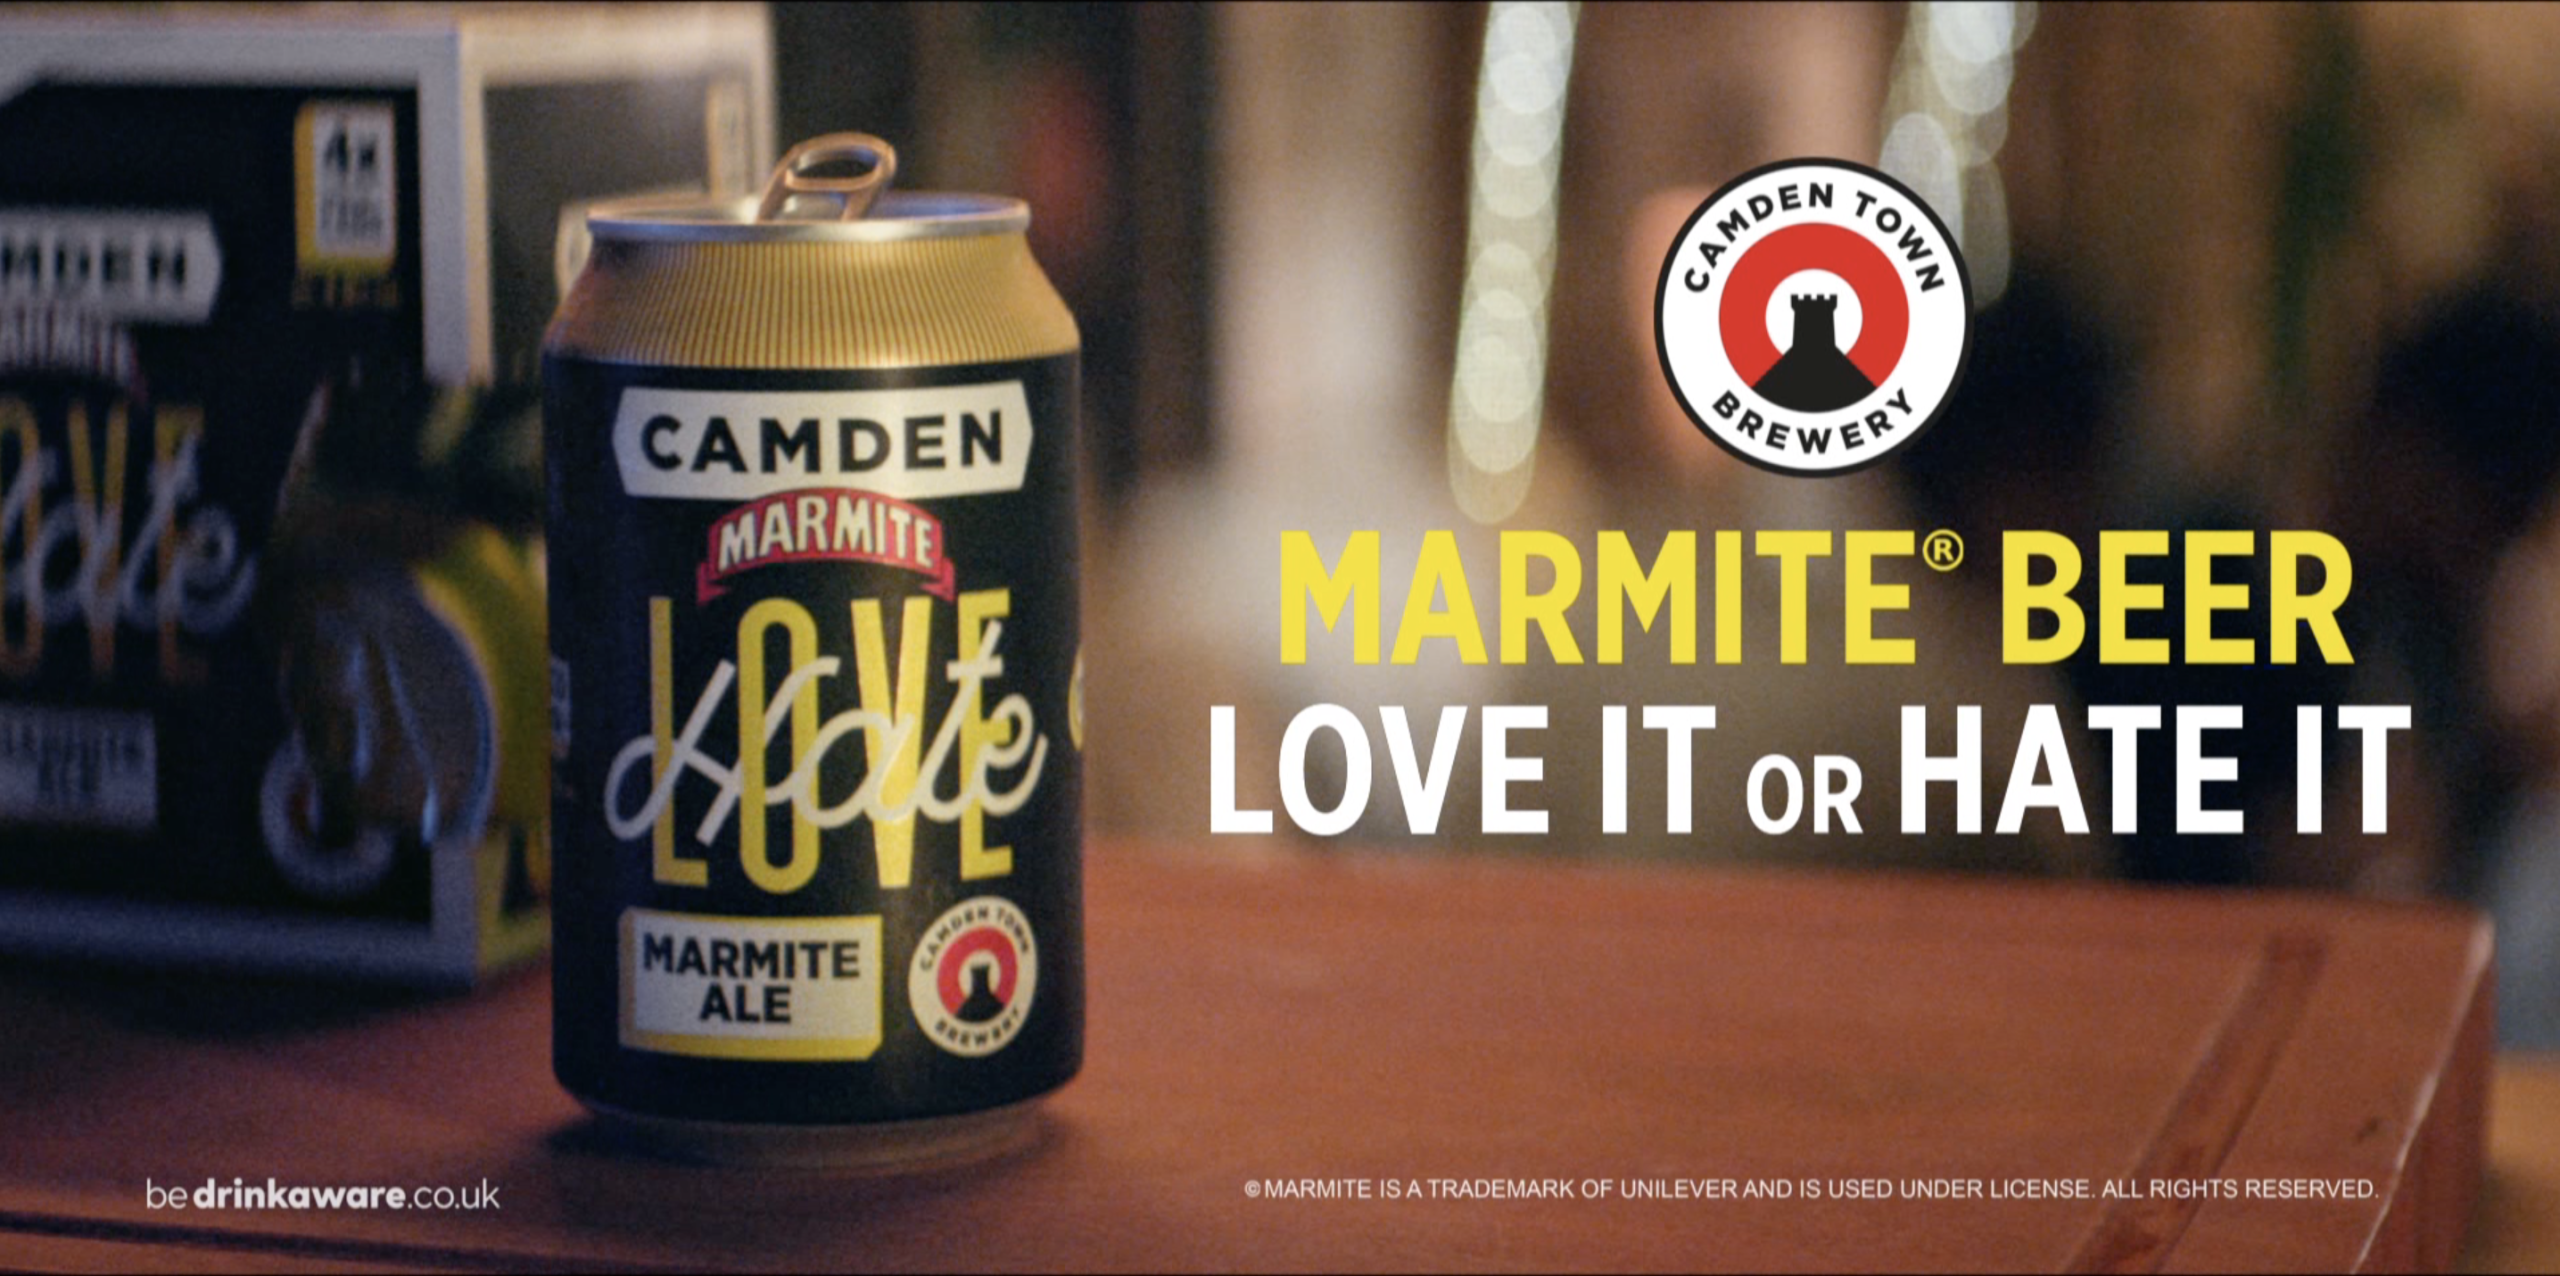 Camden Town Brewery has new Camden Marmite TV ad